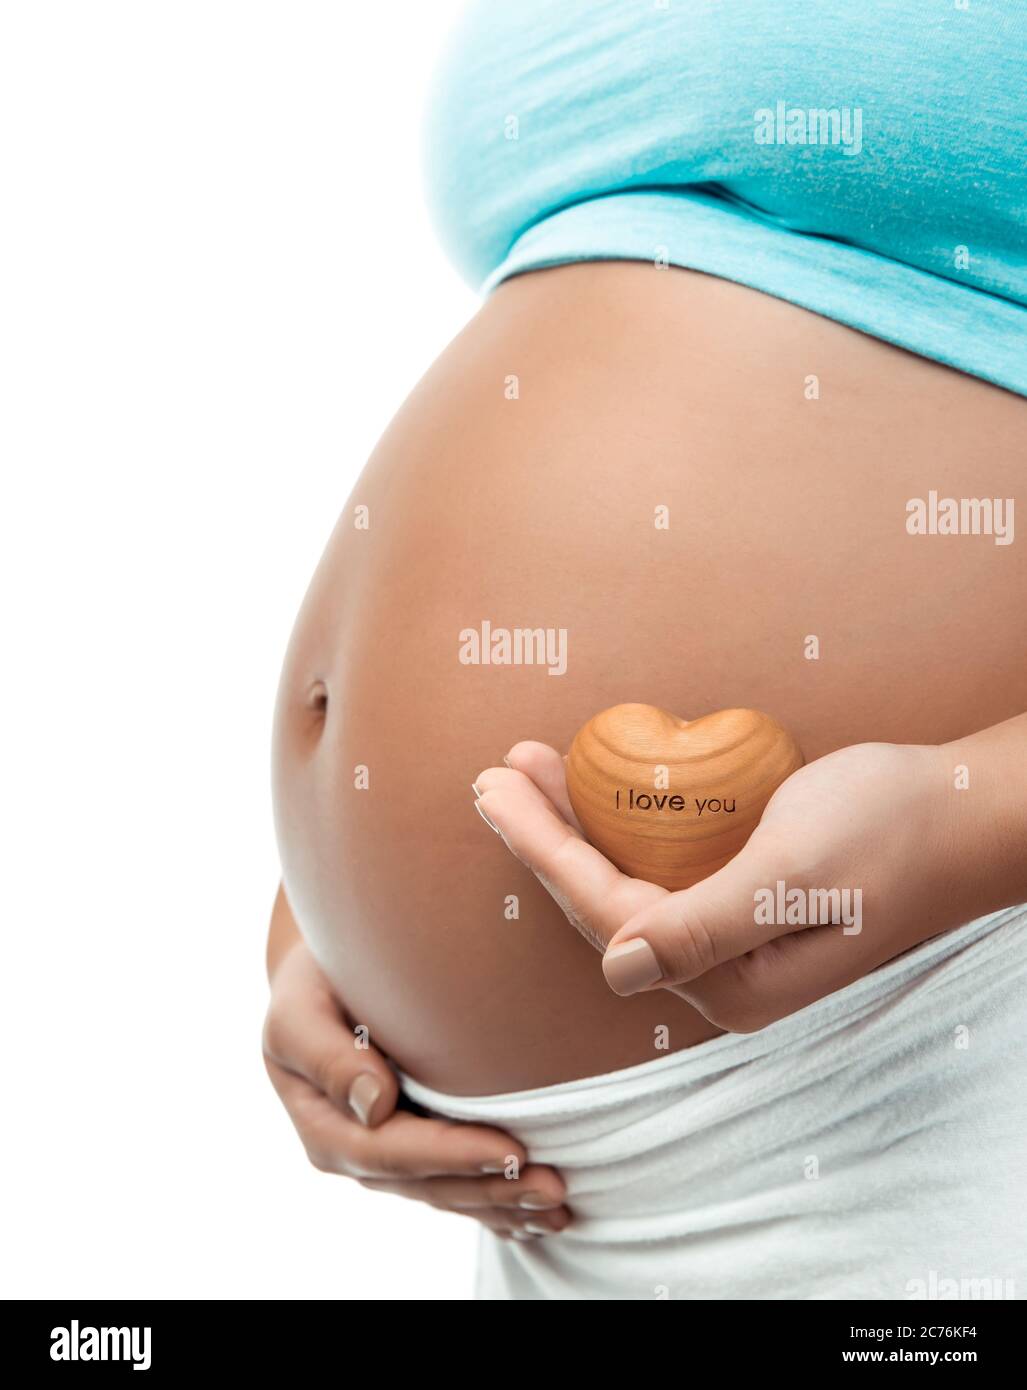 Nahaufnahme Foto einer Mumie von schwangeren Frauen und kleinen dekorativen hölzernen Herzen. Ich liebe dich. Körperteil. Neues Life-Konzept. Stockfoto